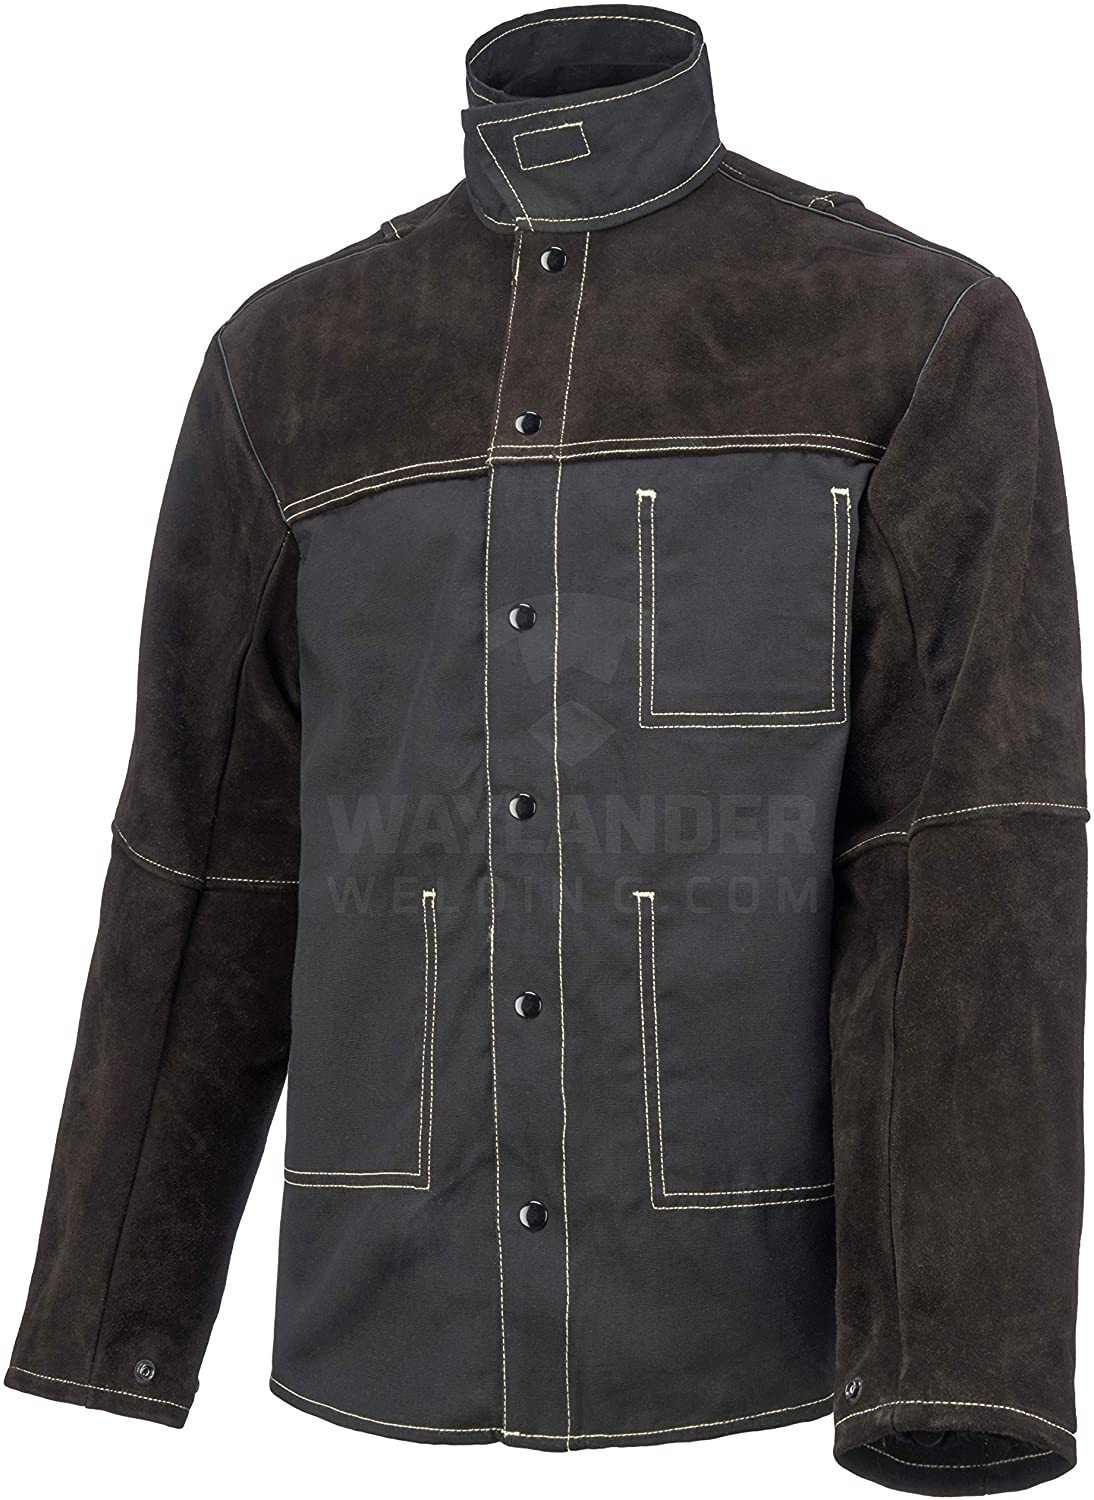 Best 7 Leather Welding Jackets - Heavy Duty, Durable & Full Sleeve Jackets